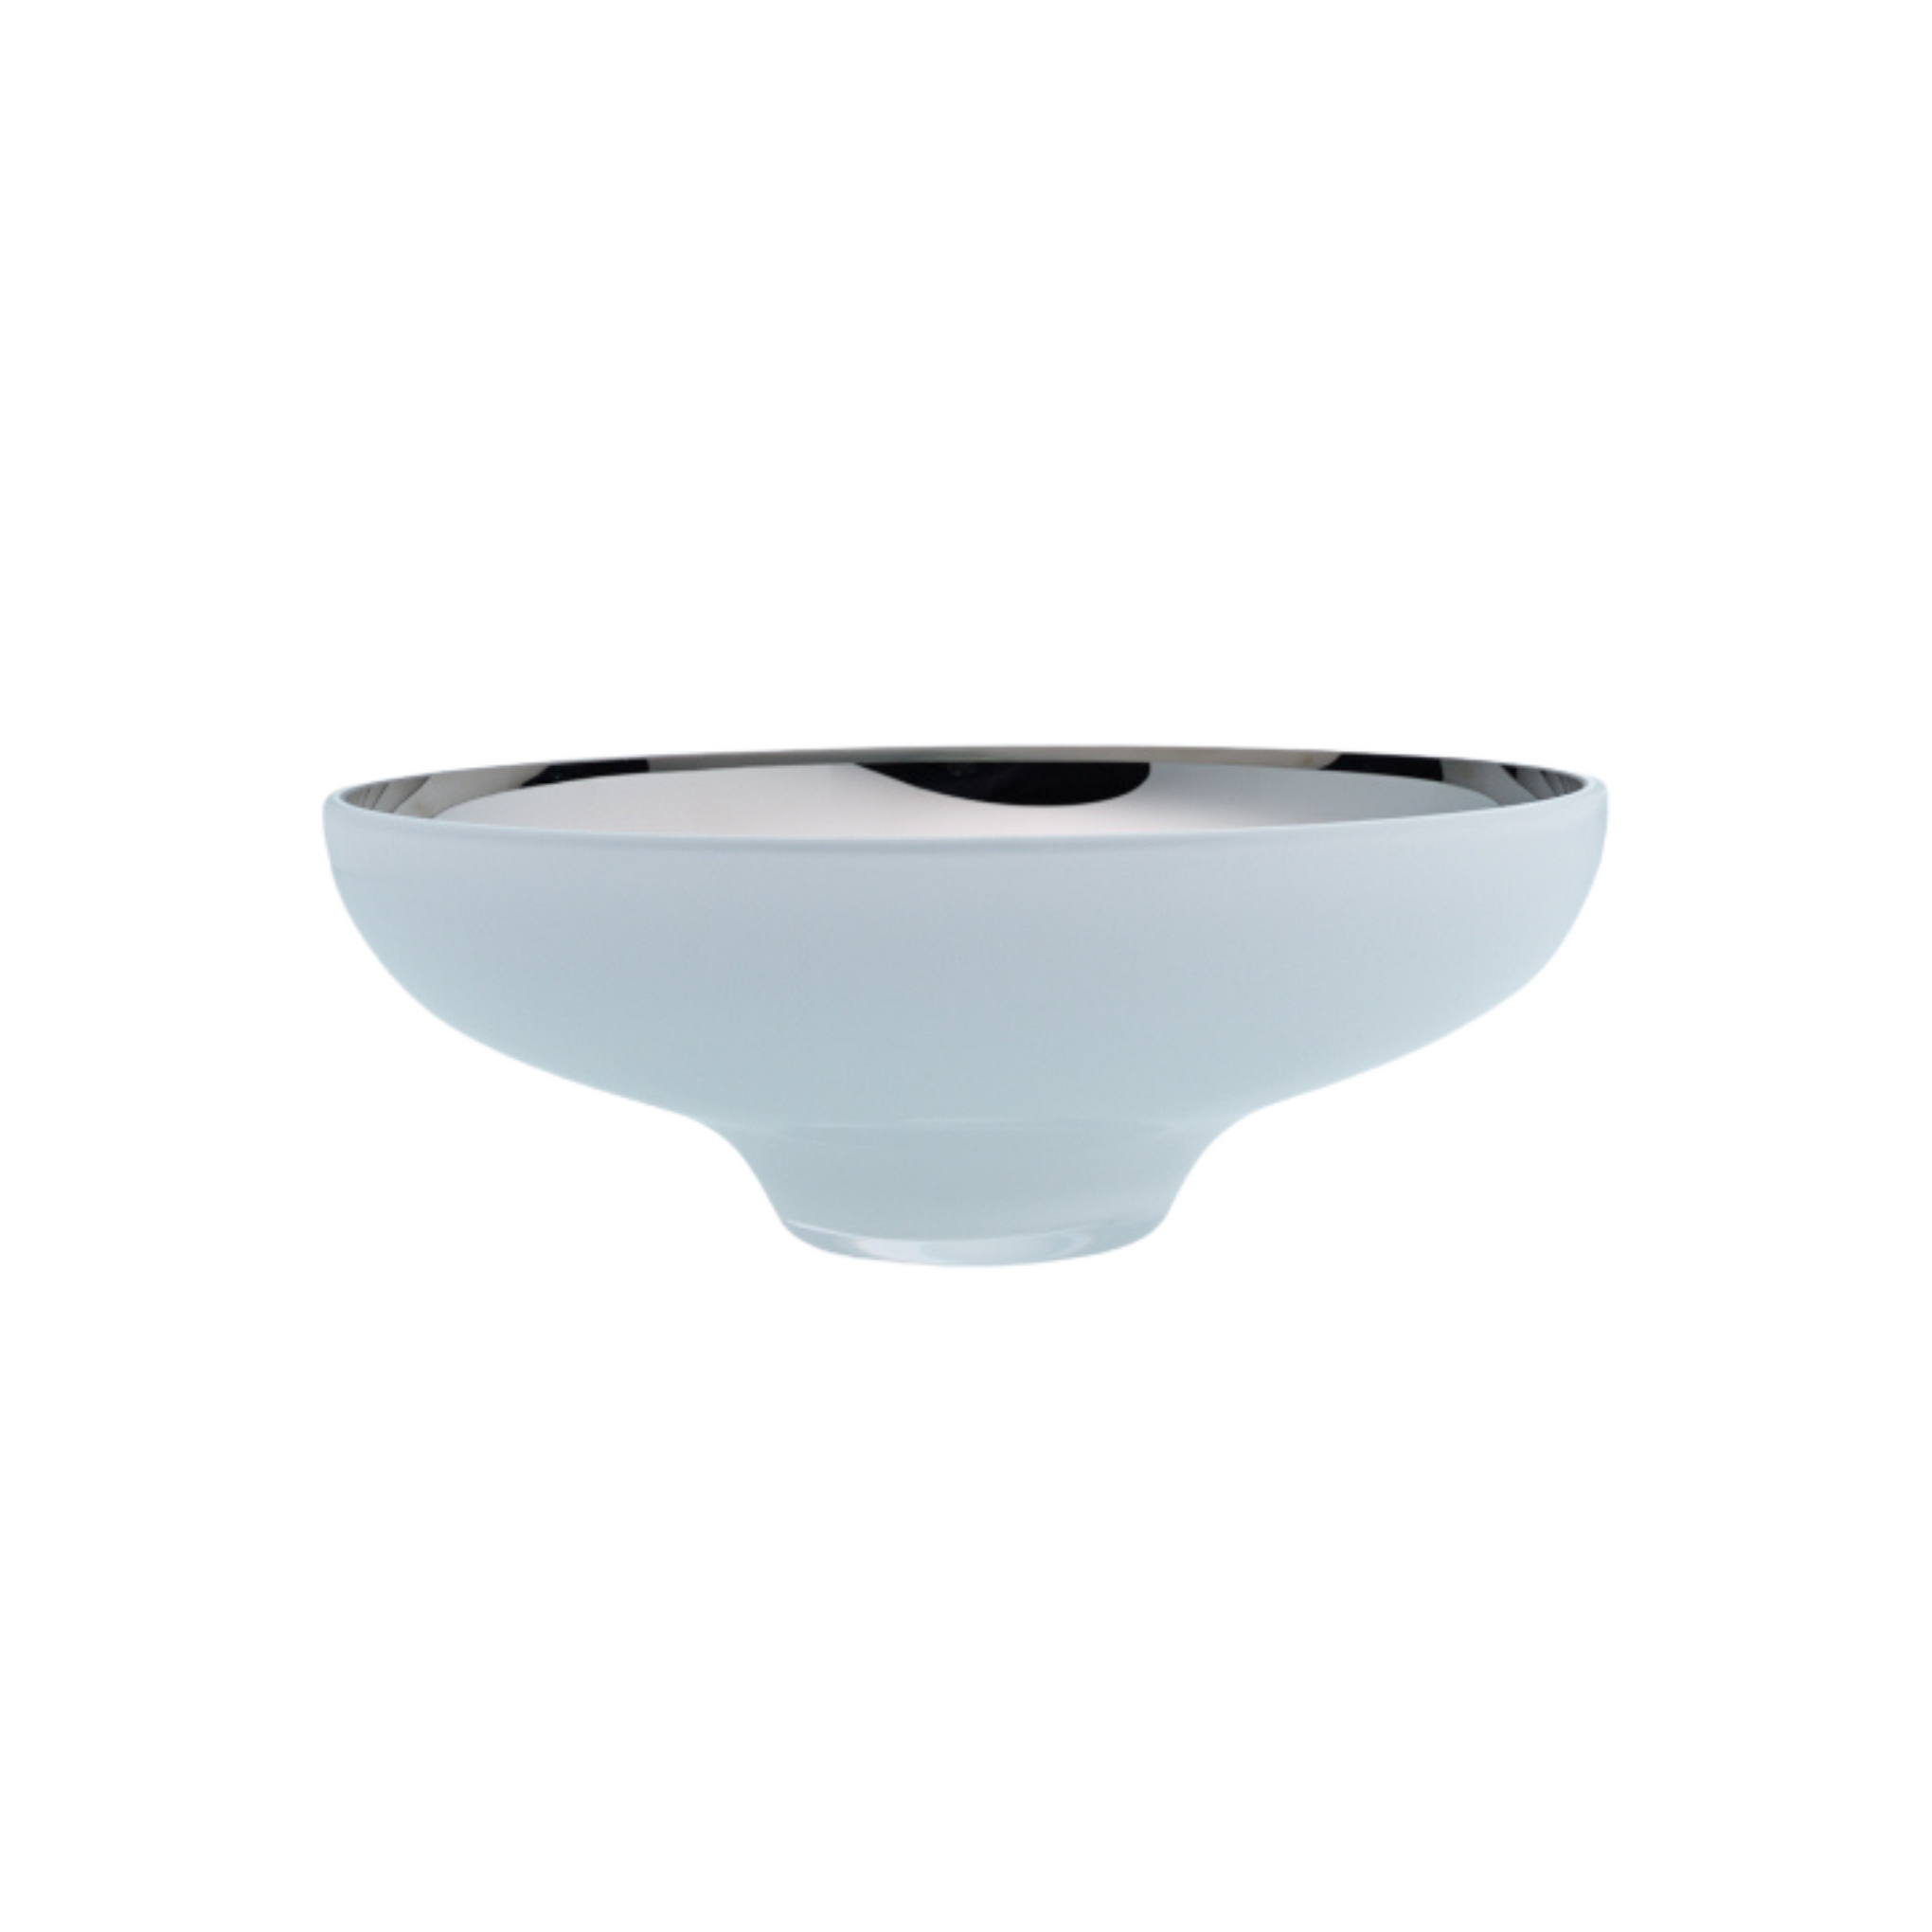 Glass bowl white decor homewares